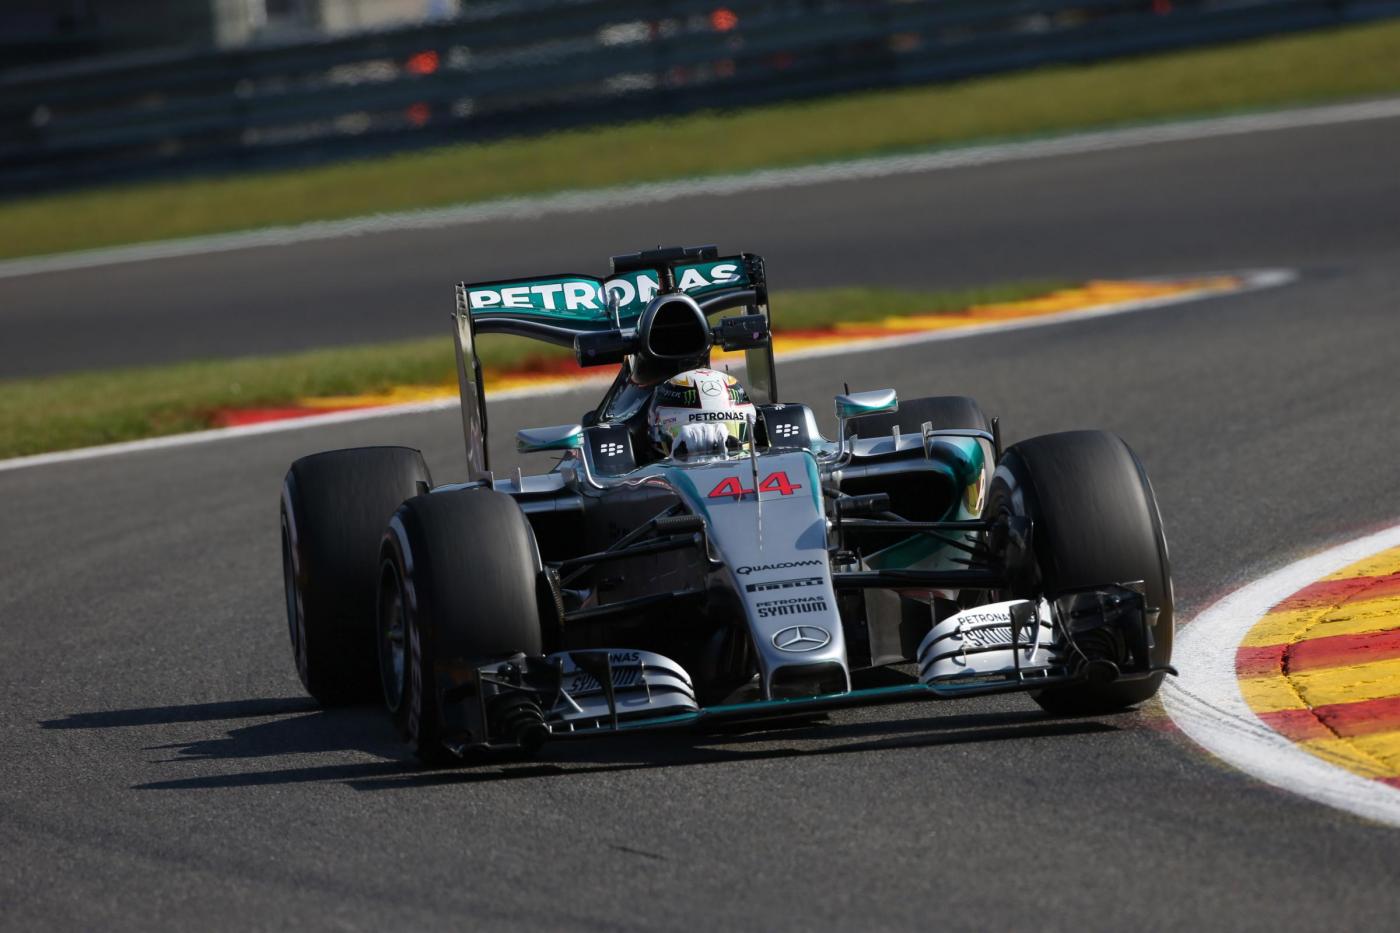 F1, Gp Belgio: Hamilton davanti a tutti in ultime libere, Vettel 3°